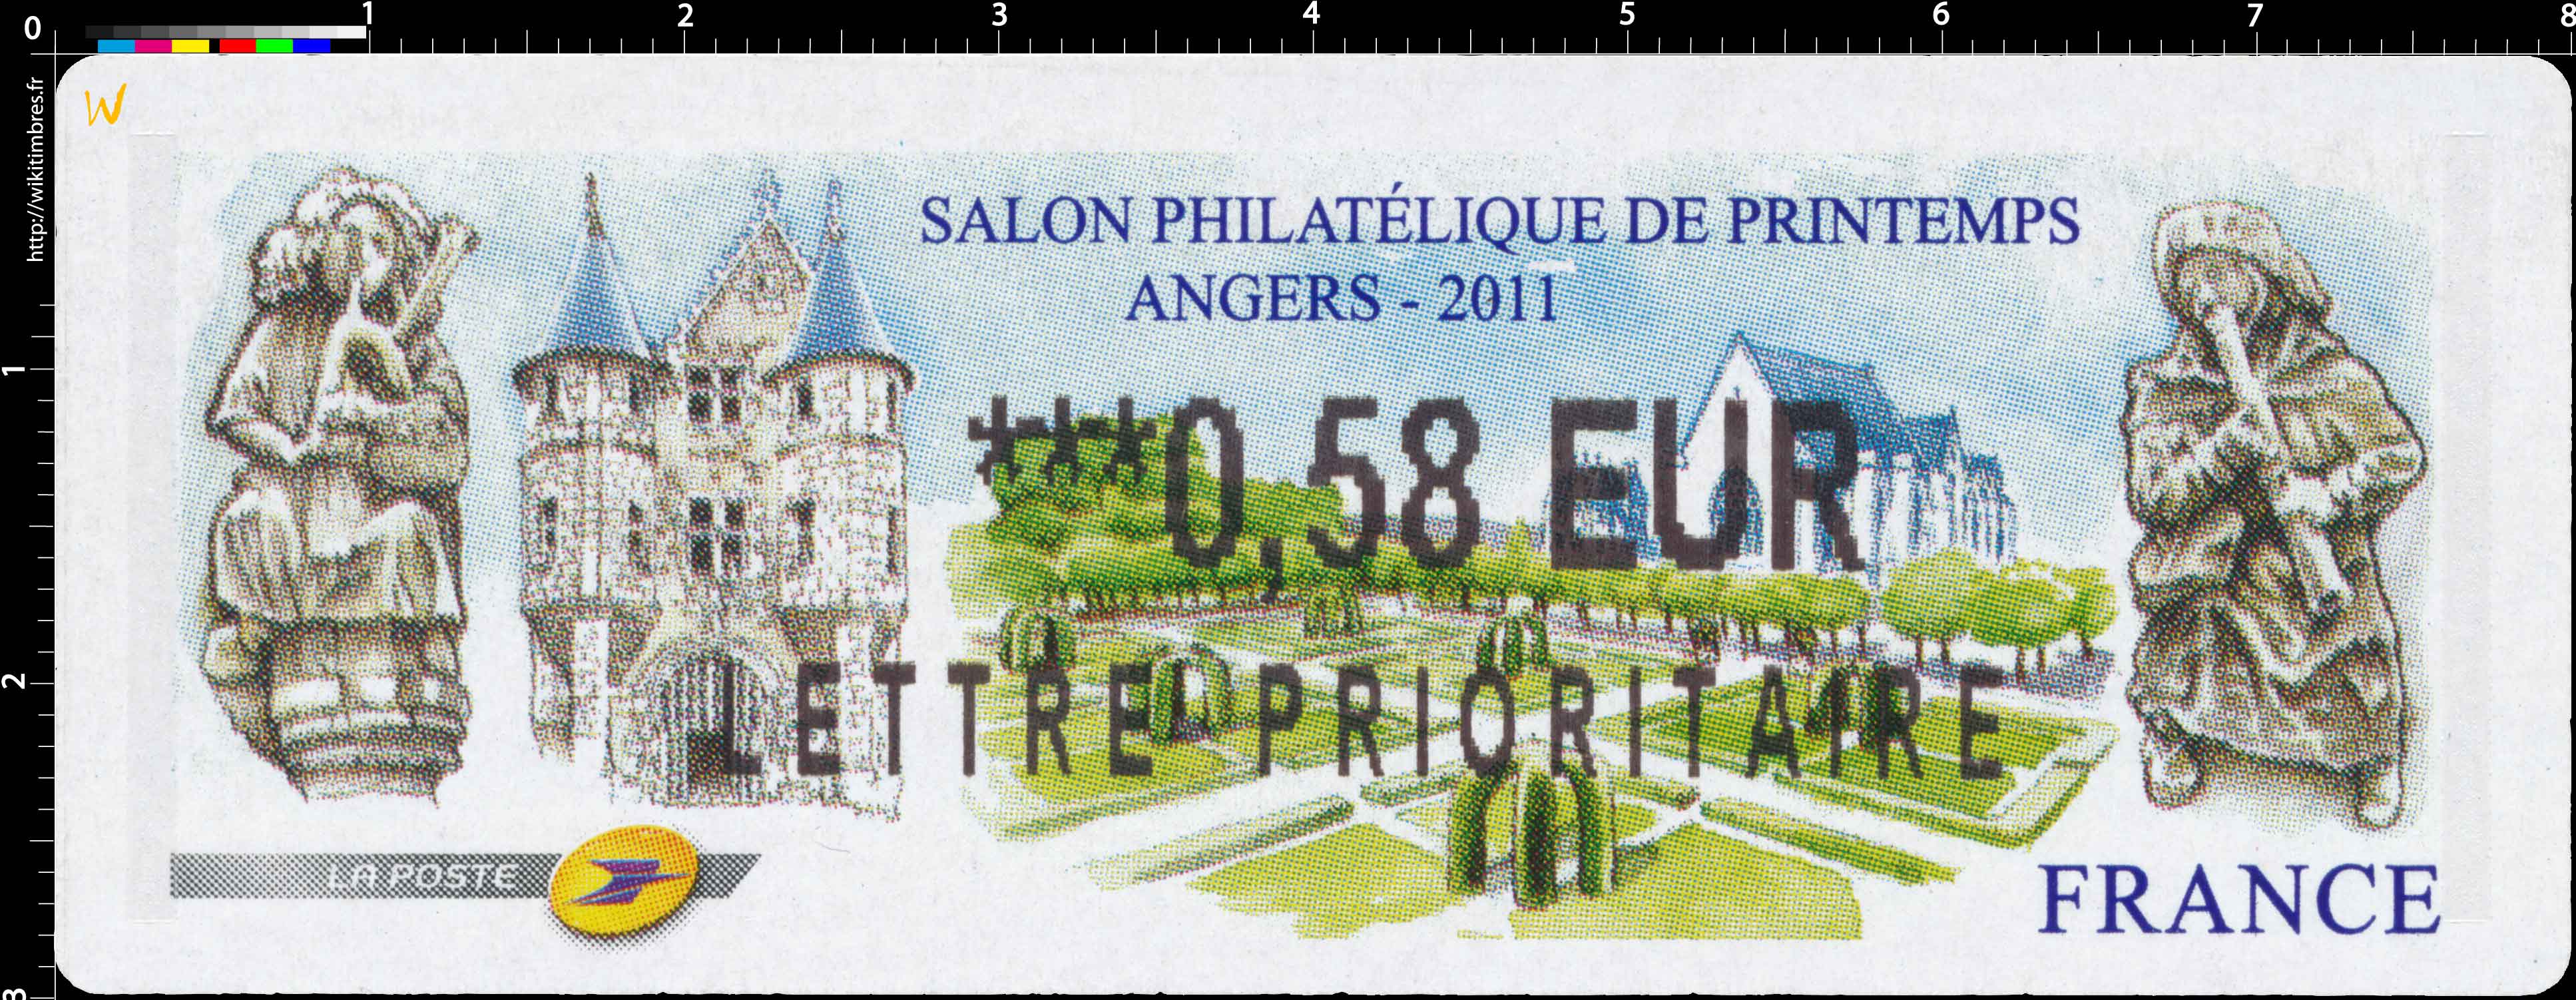 SALON PHILATÉLIQUE DE PRINTEMPS ANGERS 2011